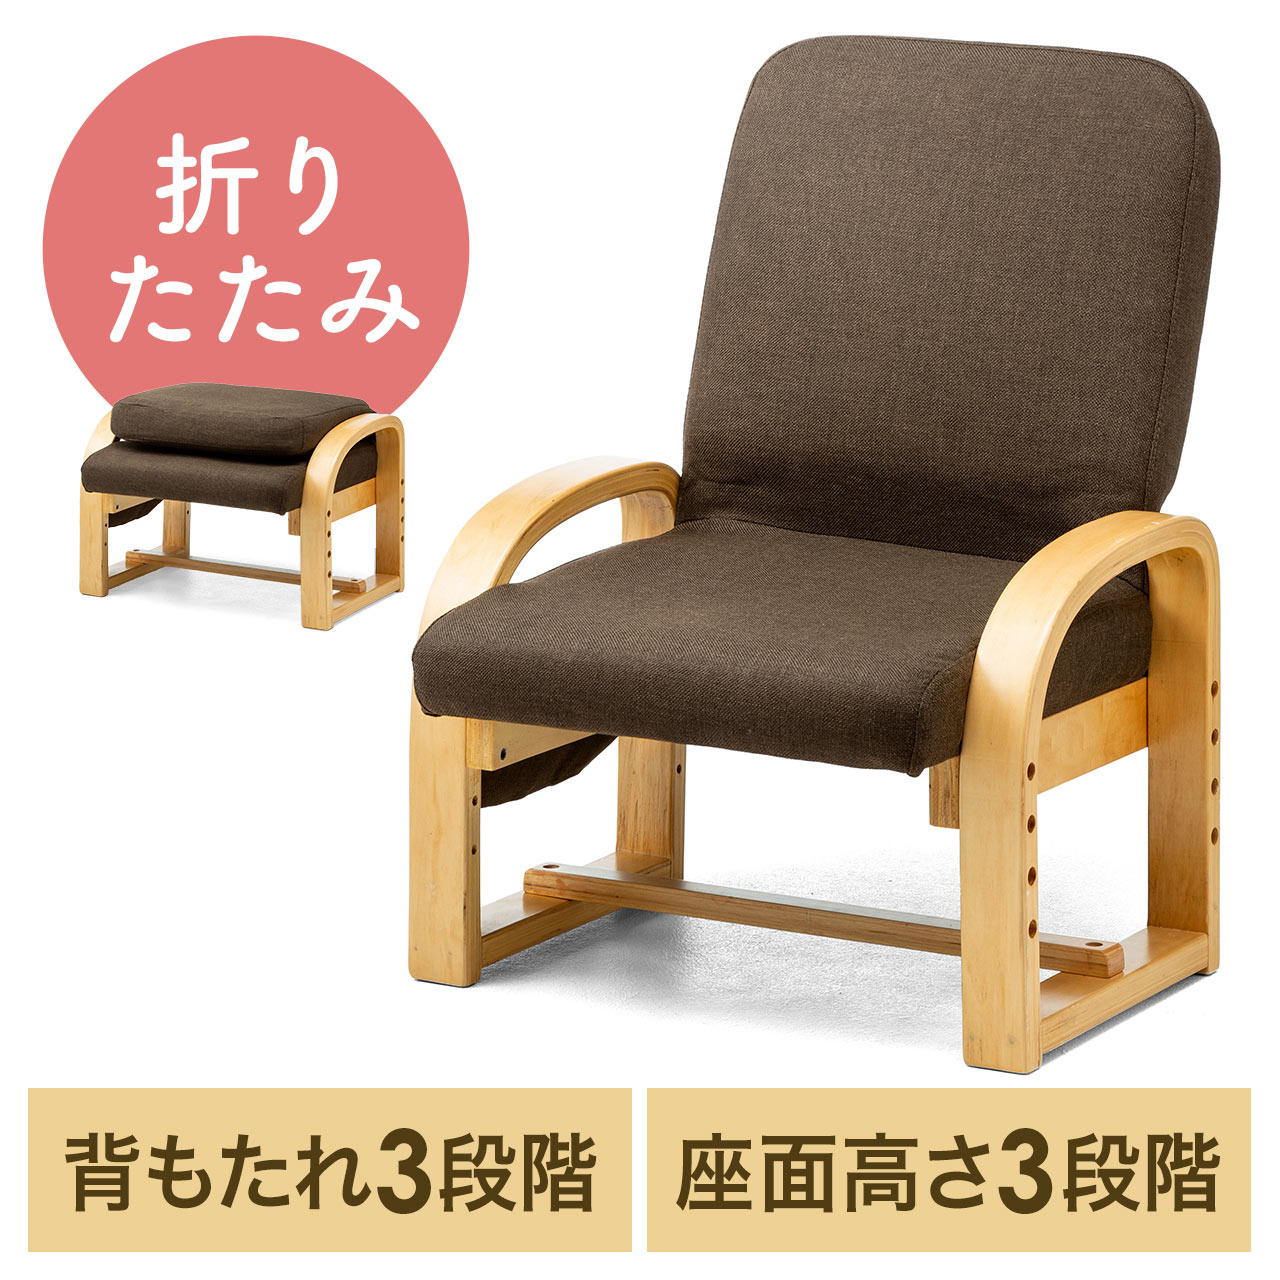 高座椅子 安楽椅子 コンパクト 背もたれ3段階角度調整 座面3段階高さ調整 背もたれ折りたたみ可能 150-SNCH021